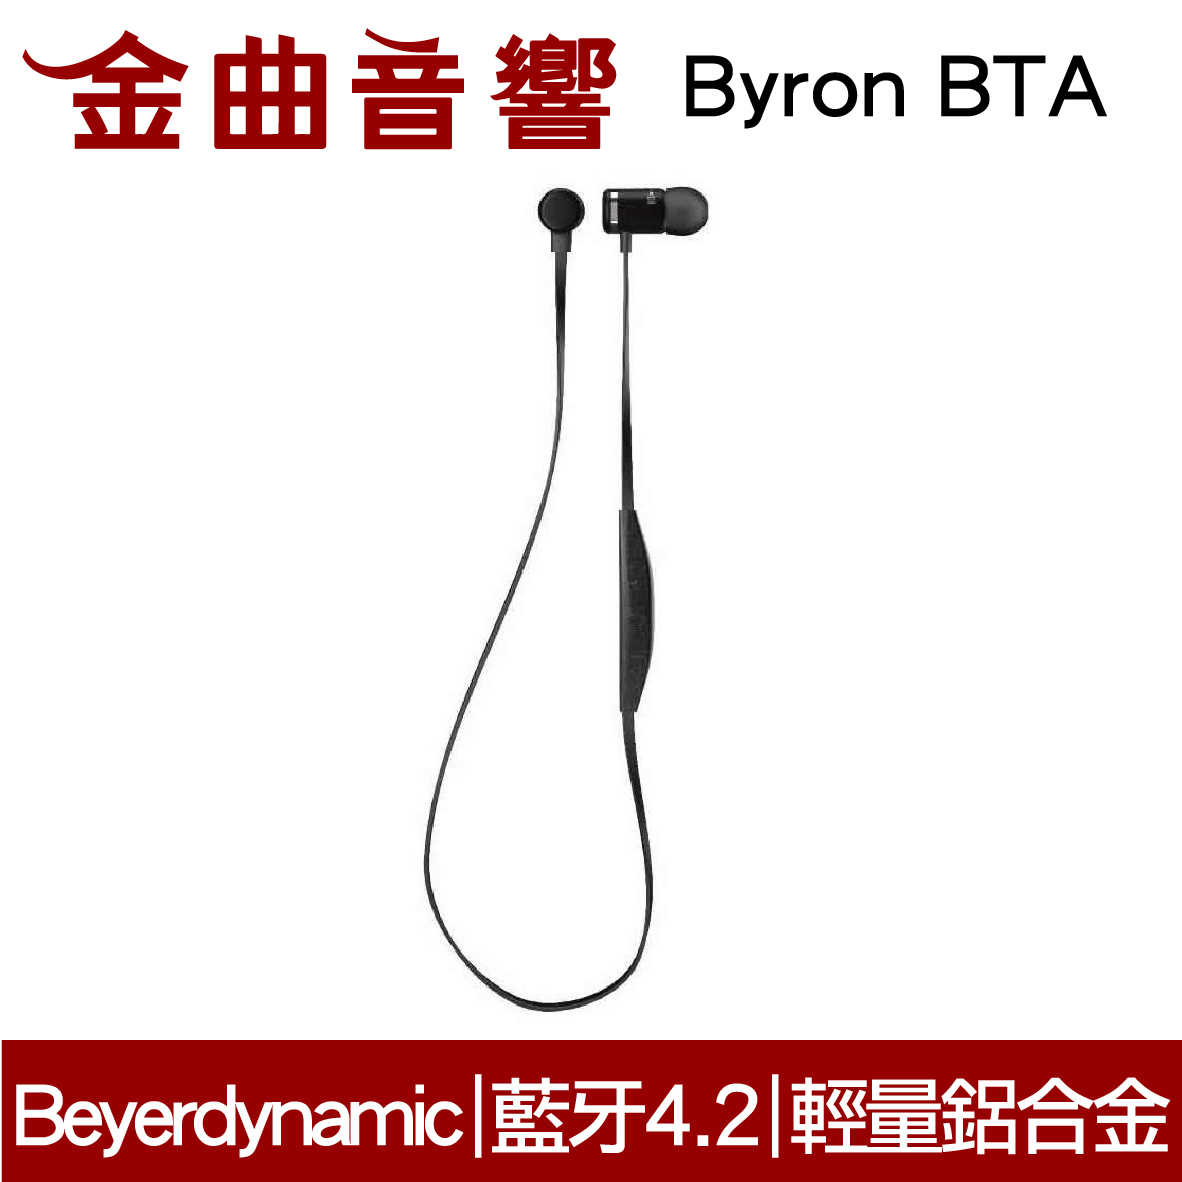 【福利機Ａ組】Beyerdynamic 拜耳 Byron BTA 無線 藍芽 耳道式耳機 | 金曲音響